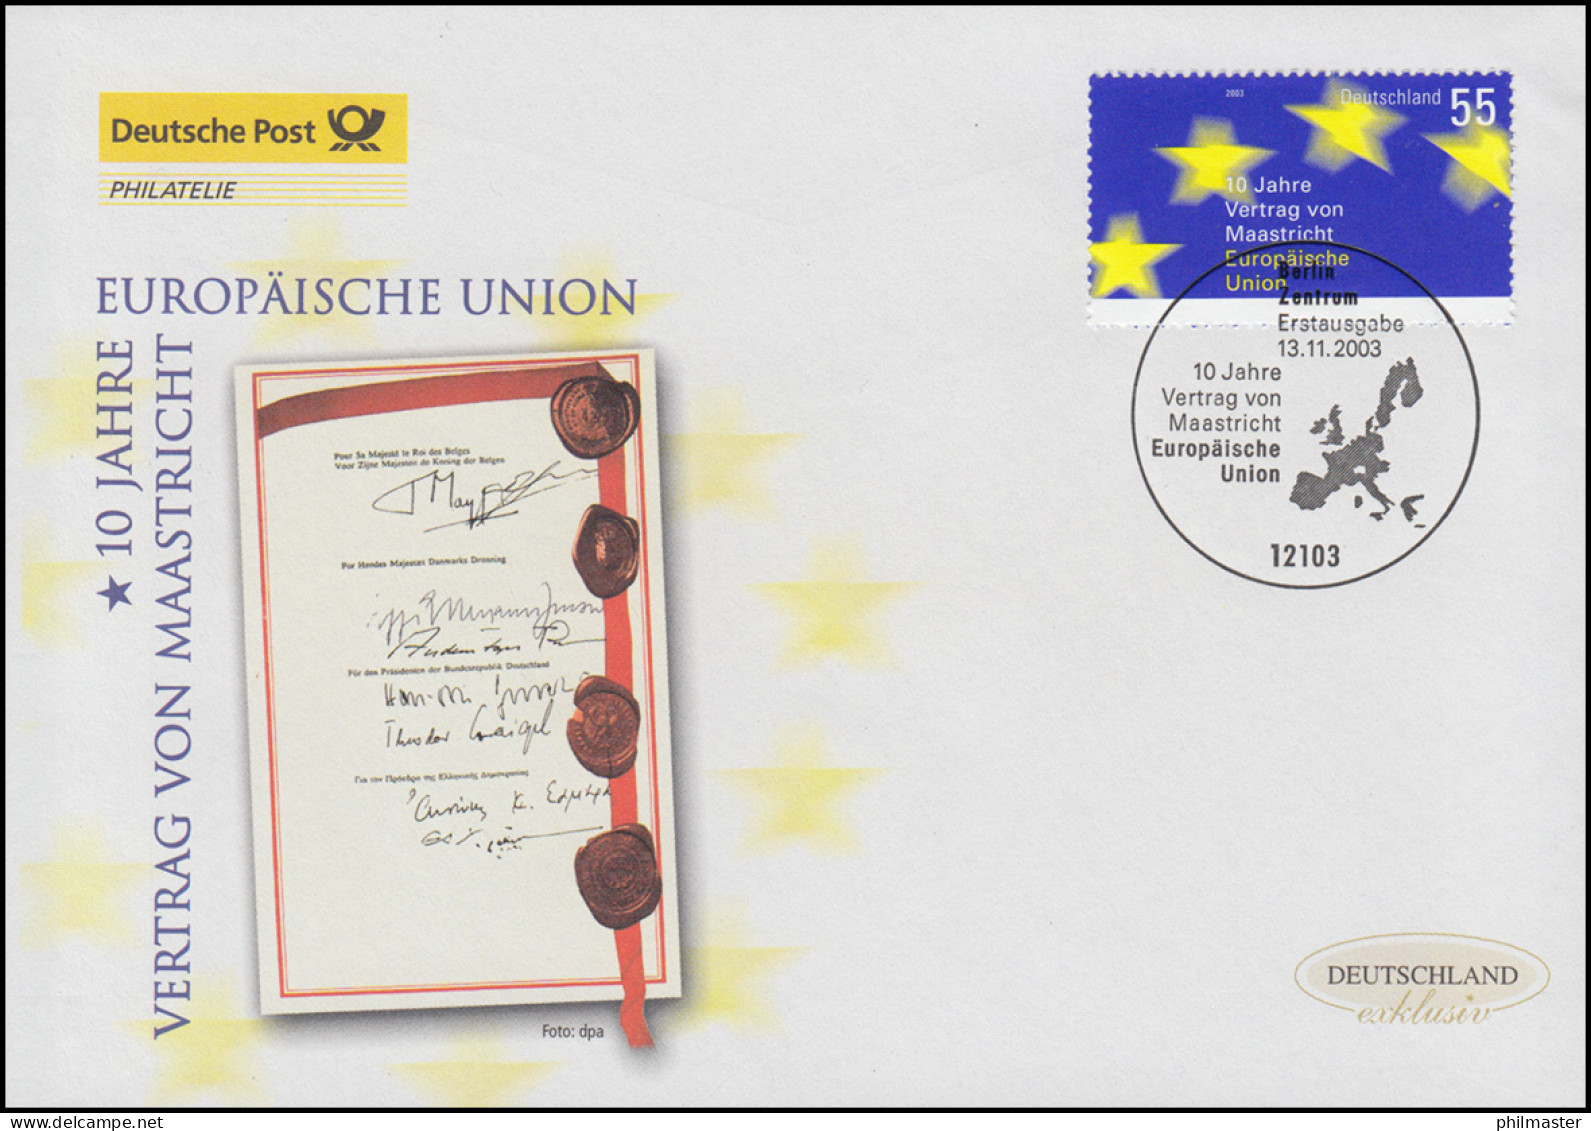 2373 Vertrag Von Maastricht: Europäische Union, Schmuck-FDC Deutschland Exklusiv - Briefe U. Dokumente